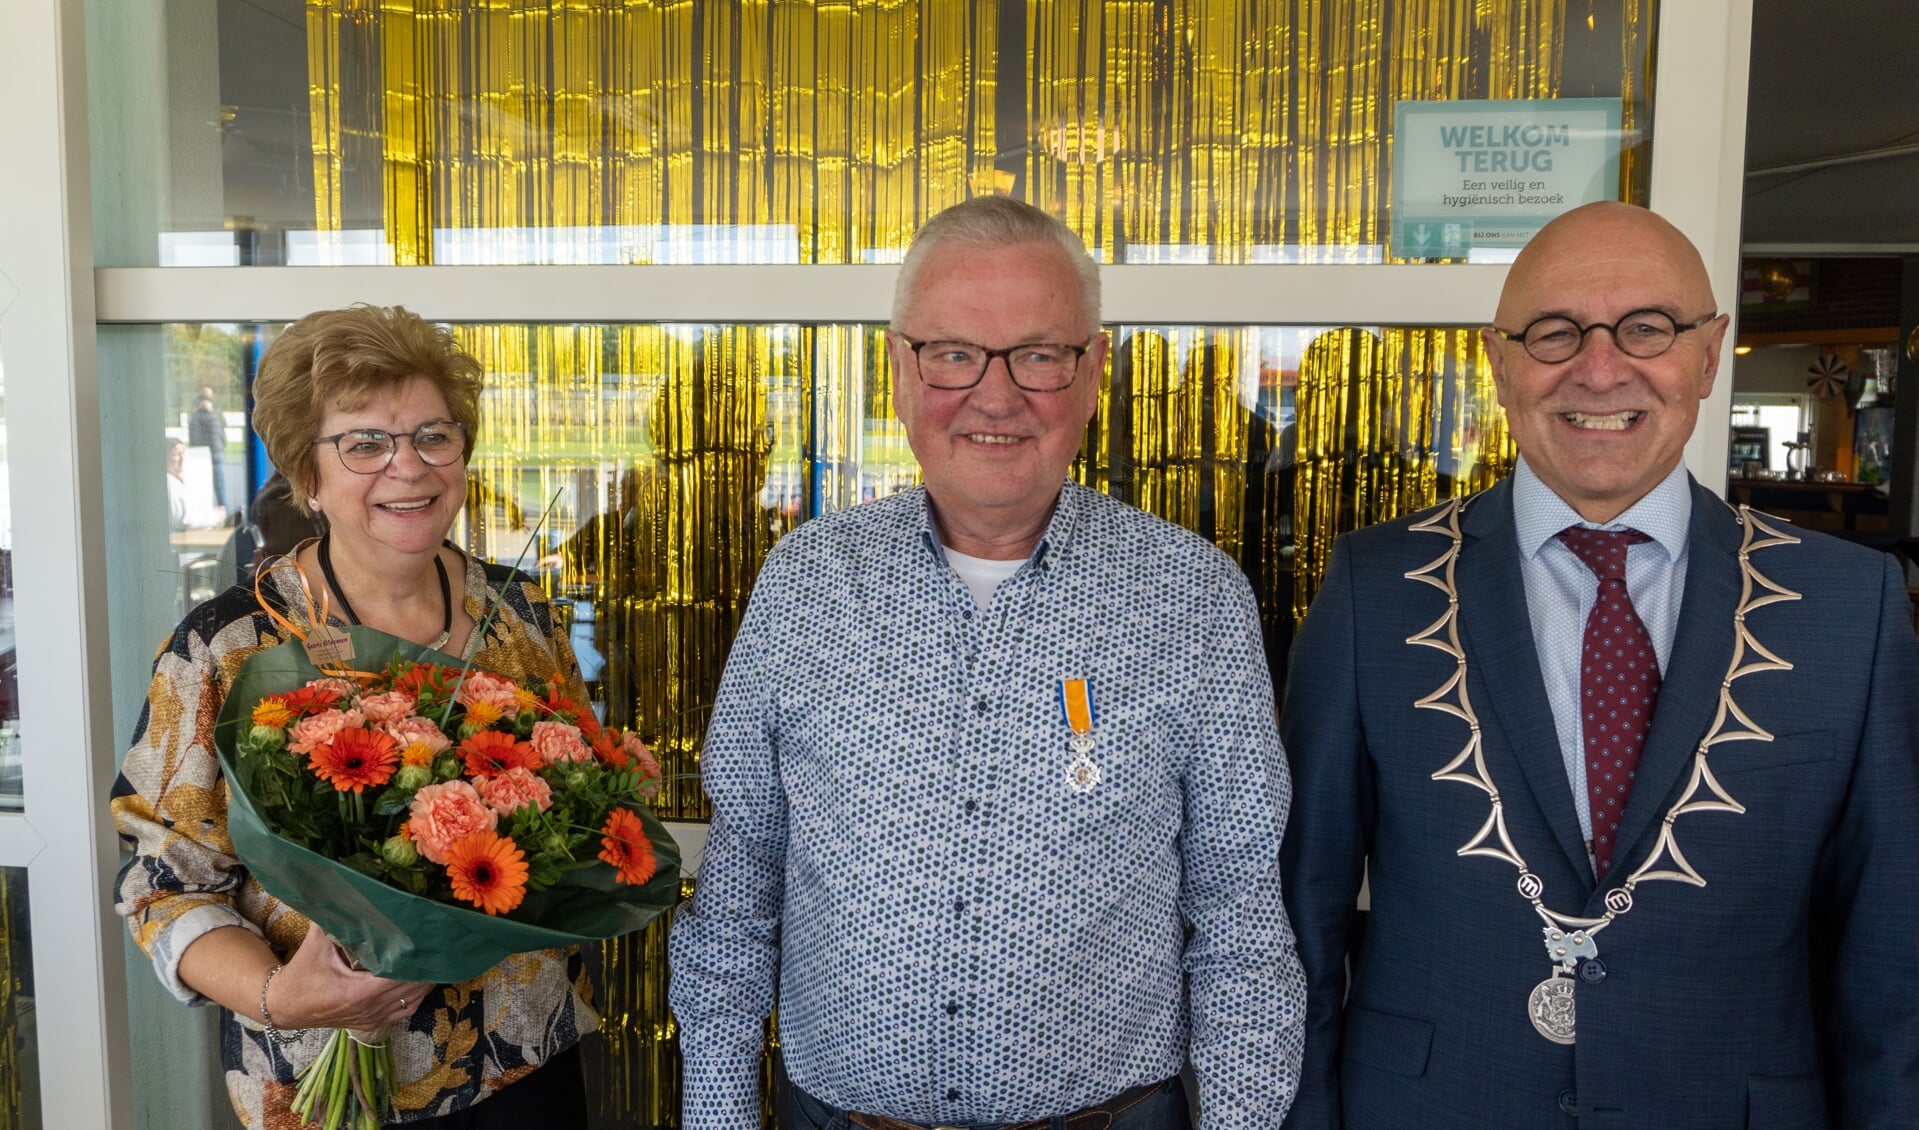 Gijs van Doorn heeft uit handen van burgemeester Van Rooij een Koninklijke onderscheiding ontvangen.  